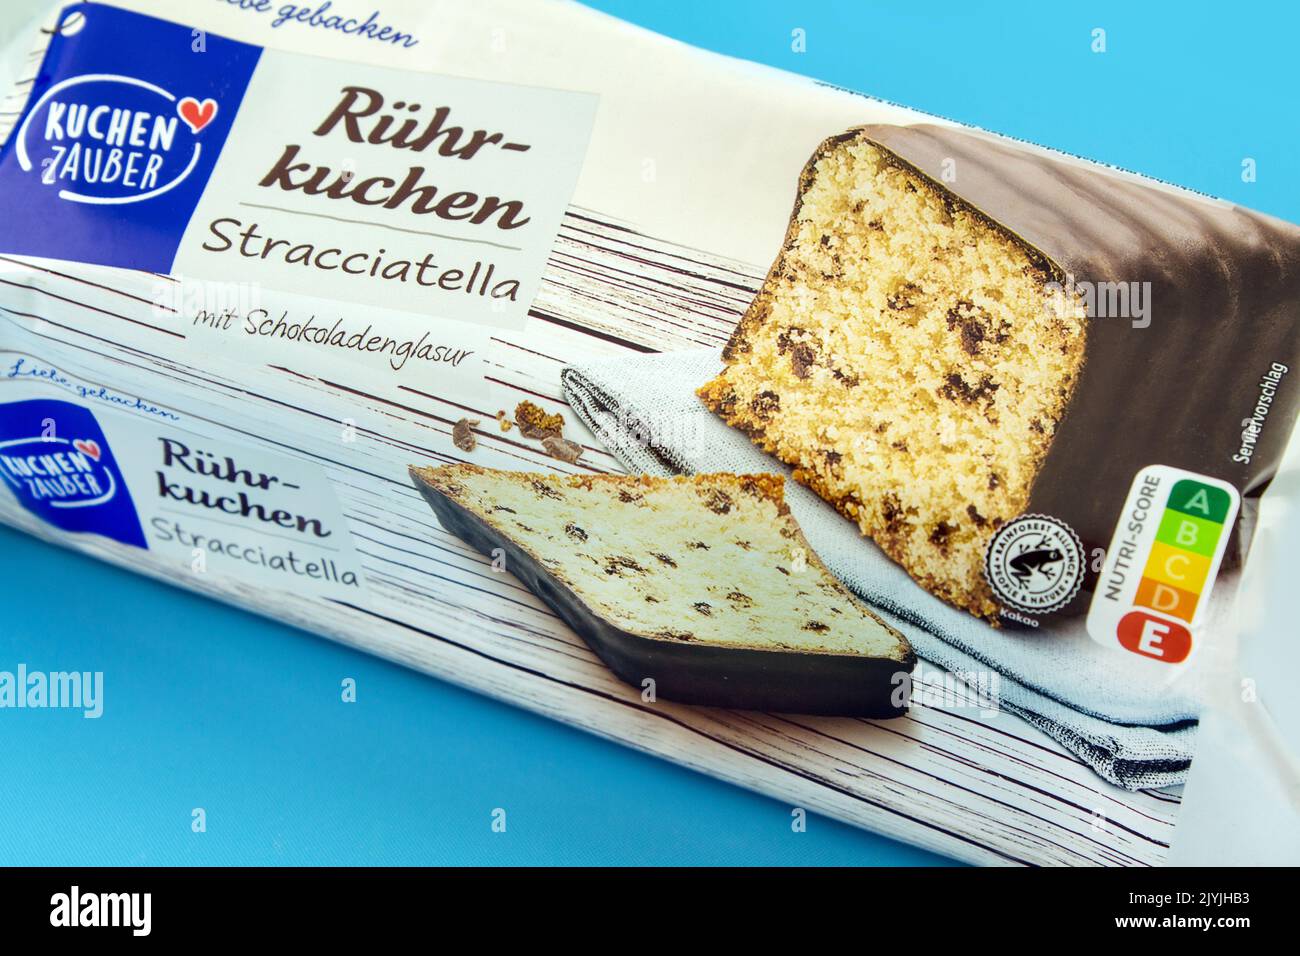 German Straciatella Cake from Kuchen Zauber Stock Photo